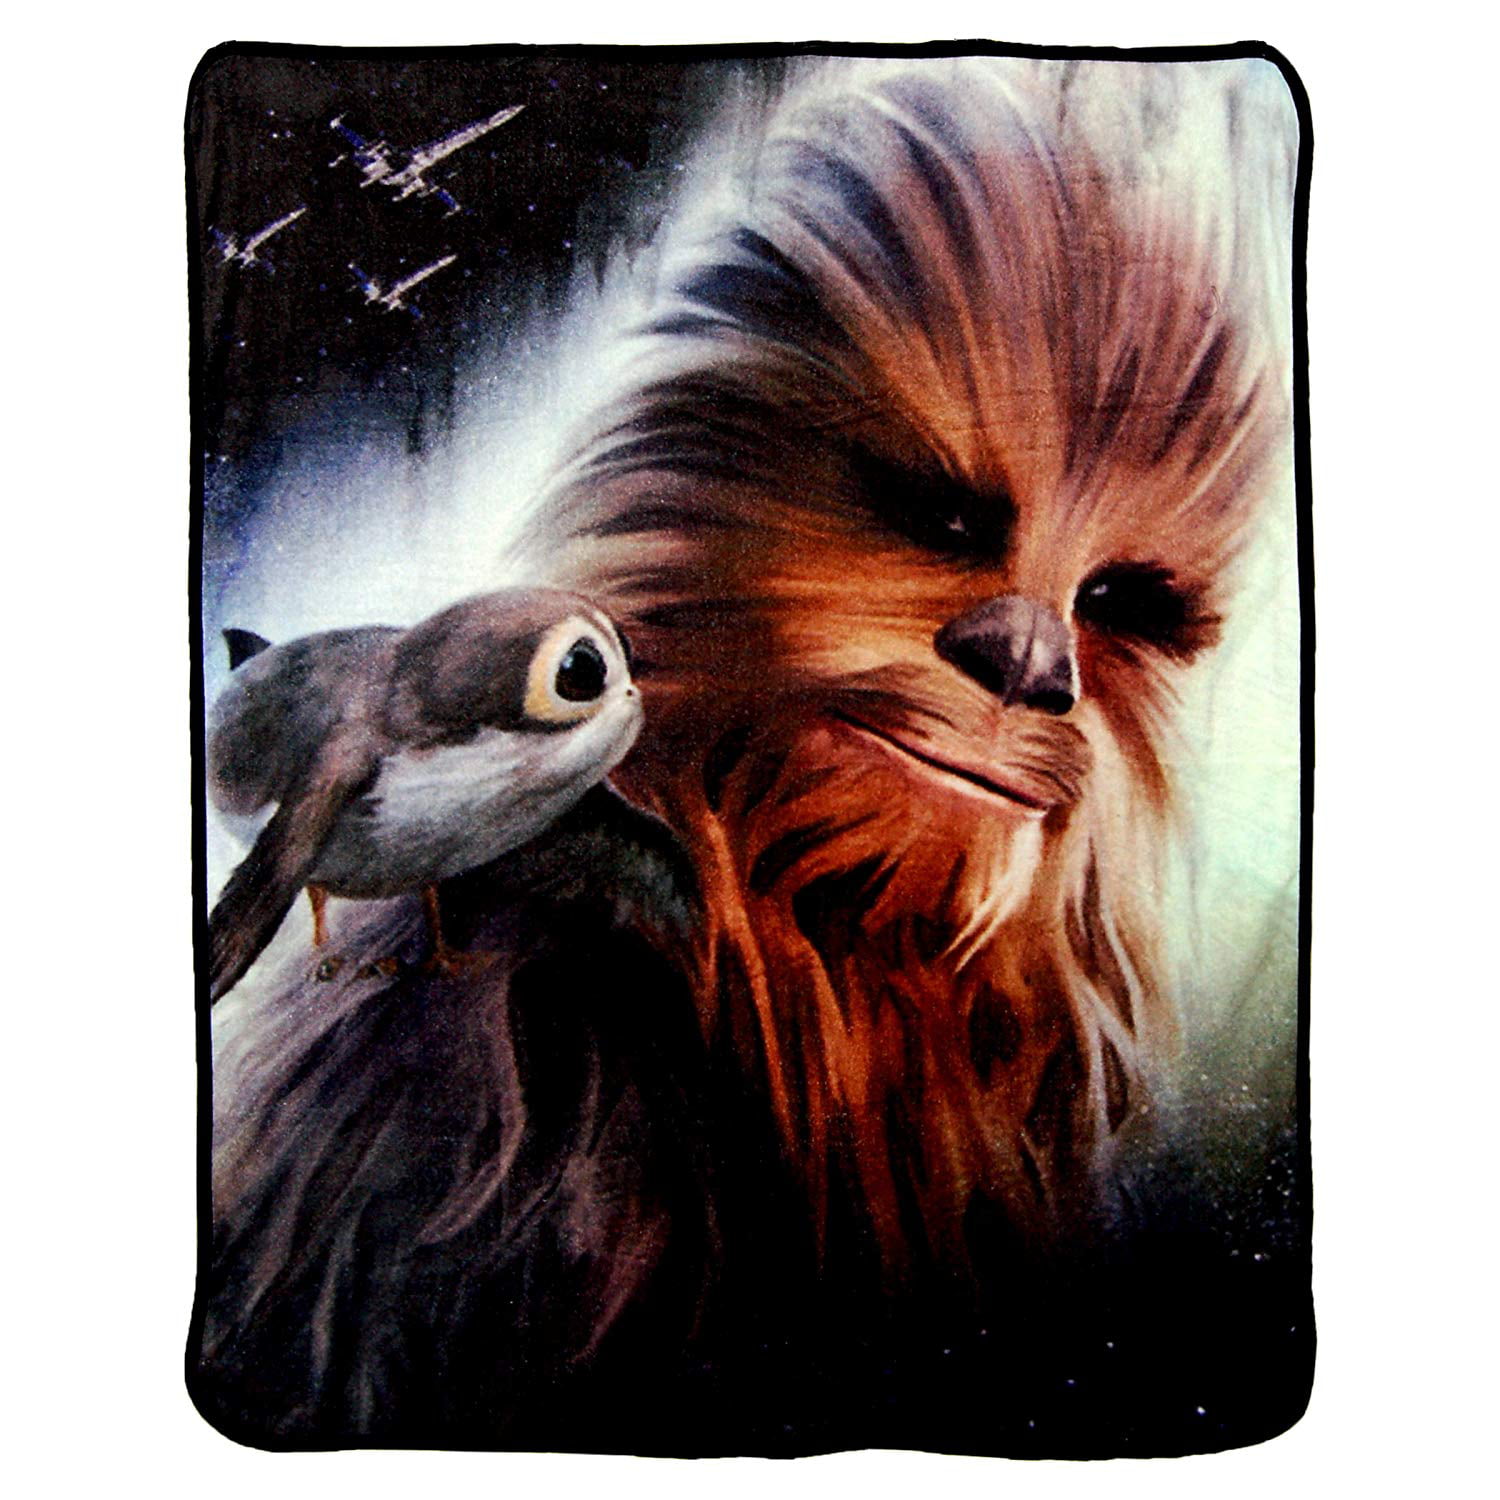 Disney Star Wars The LAST JEDI Chewbacca Soft Throw Blanket 46"X 60" NEW 2017 